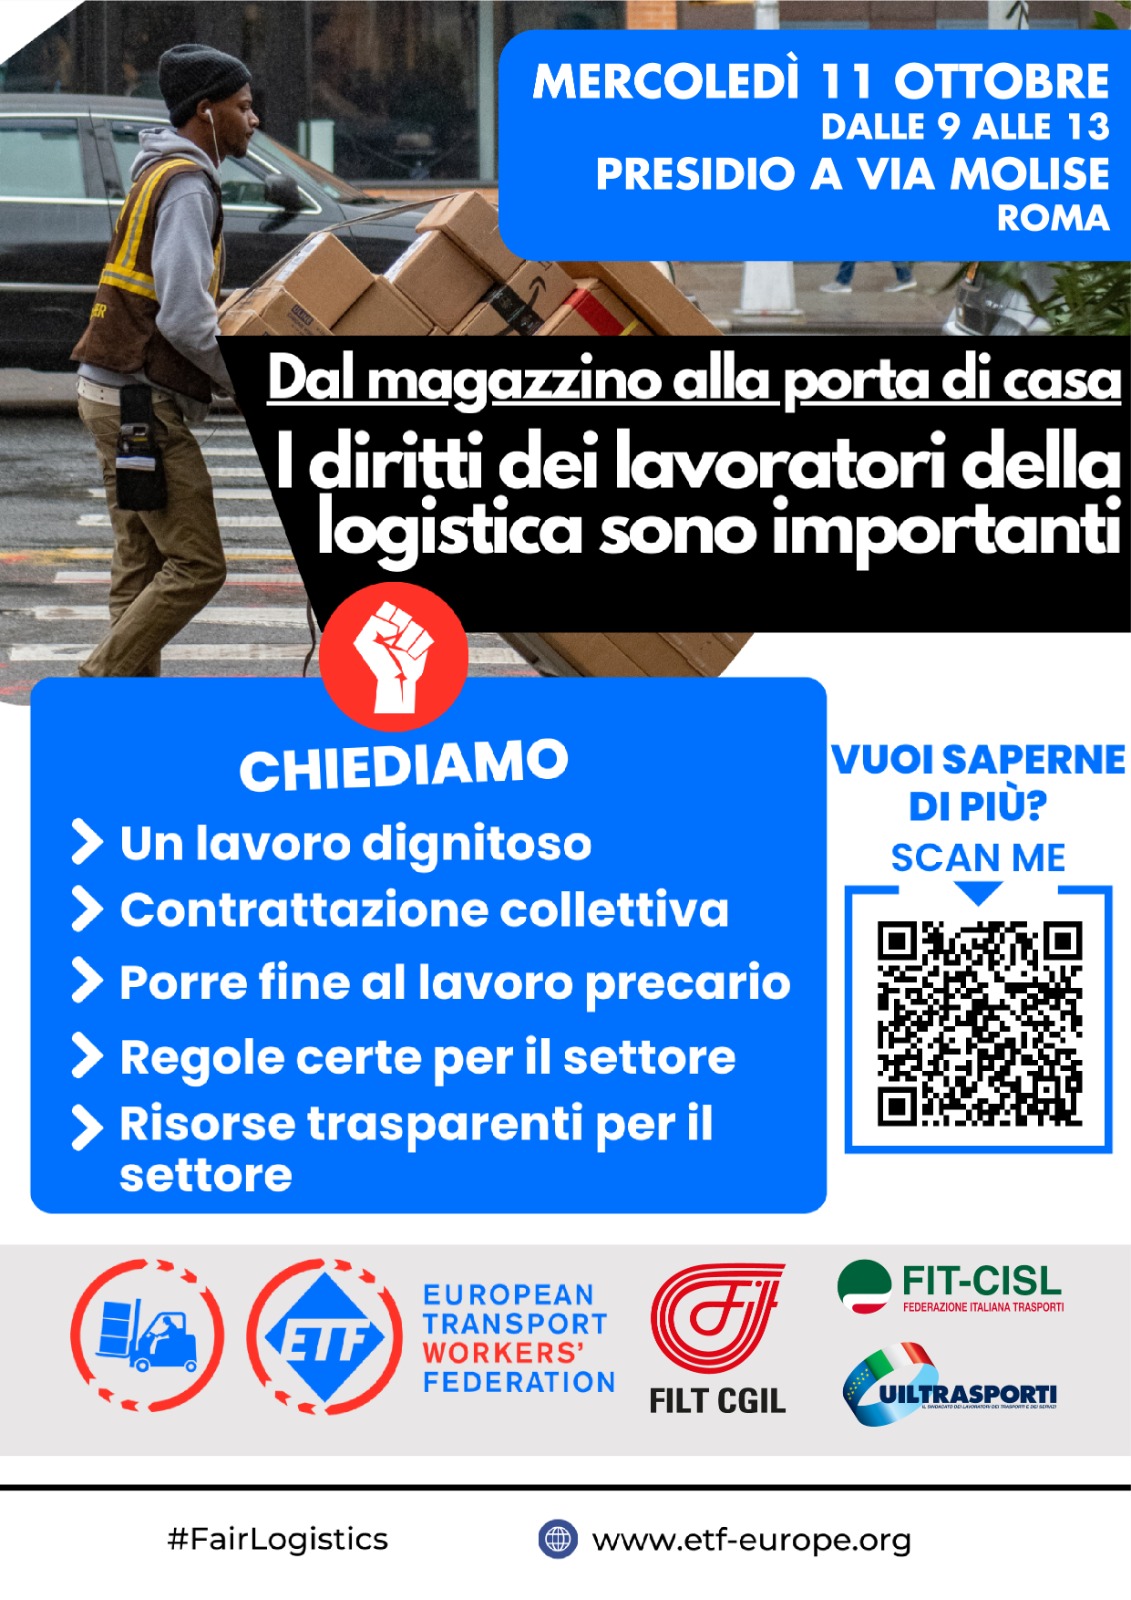 Trasporti, Al via anche in Italia Campagna europea “Giornate d’azione per la logistica"